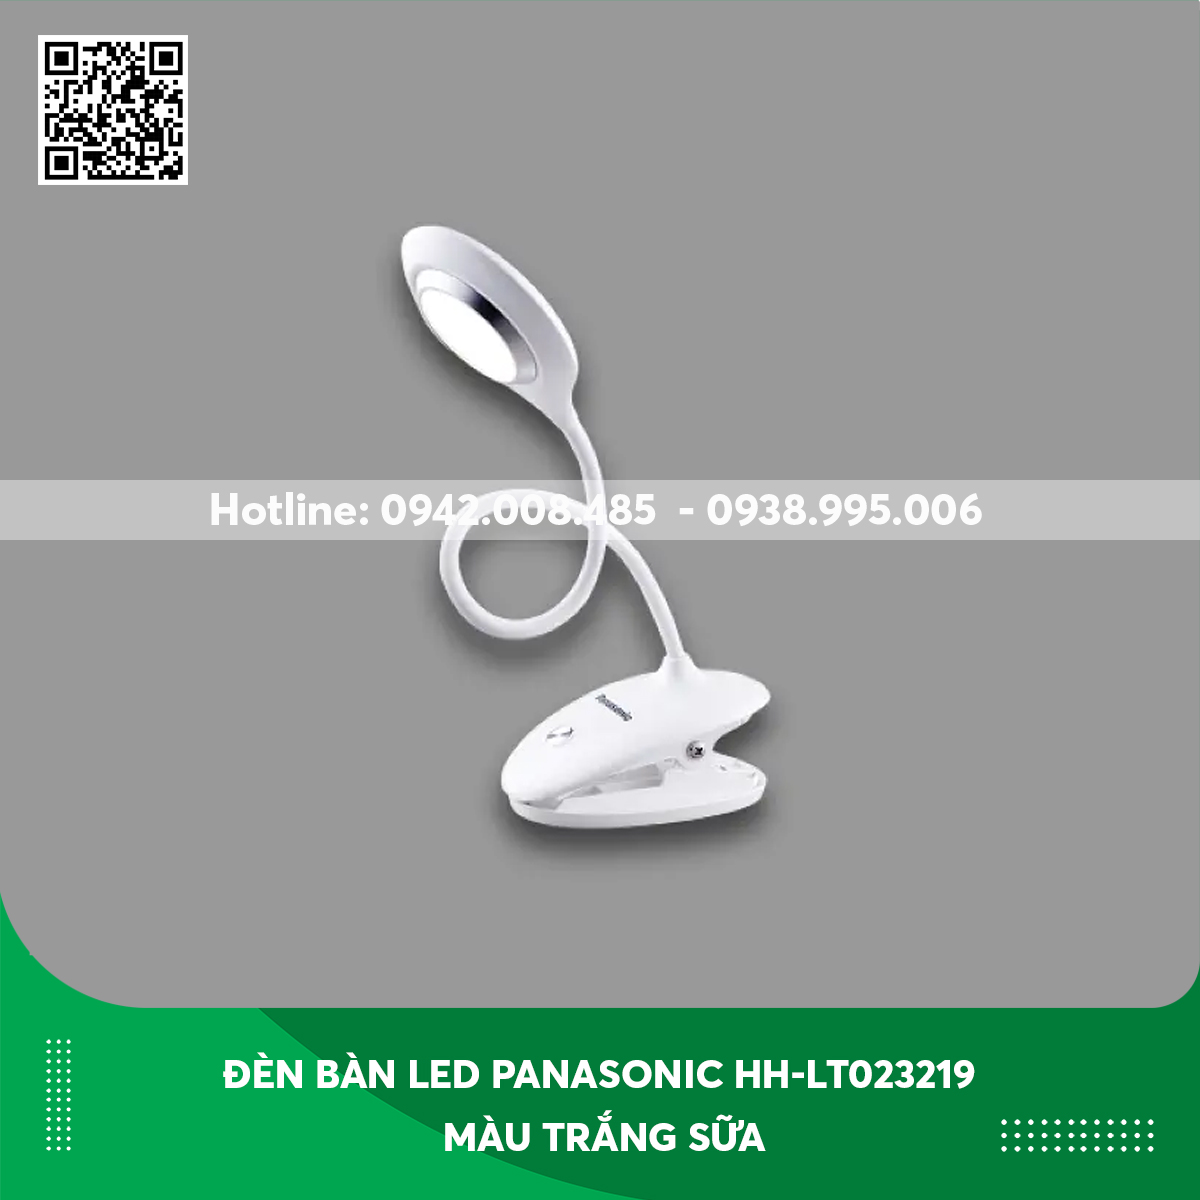 Đèn bàn LED Panasonic HH-LT023219 màu trắng sữa